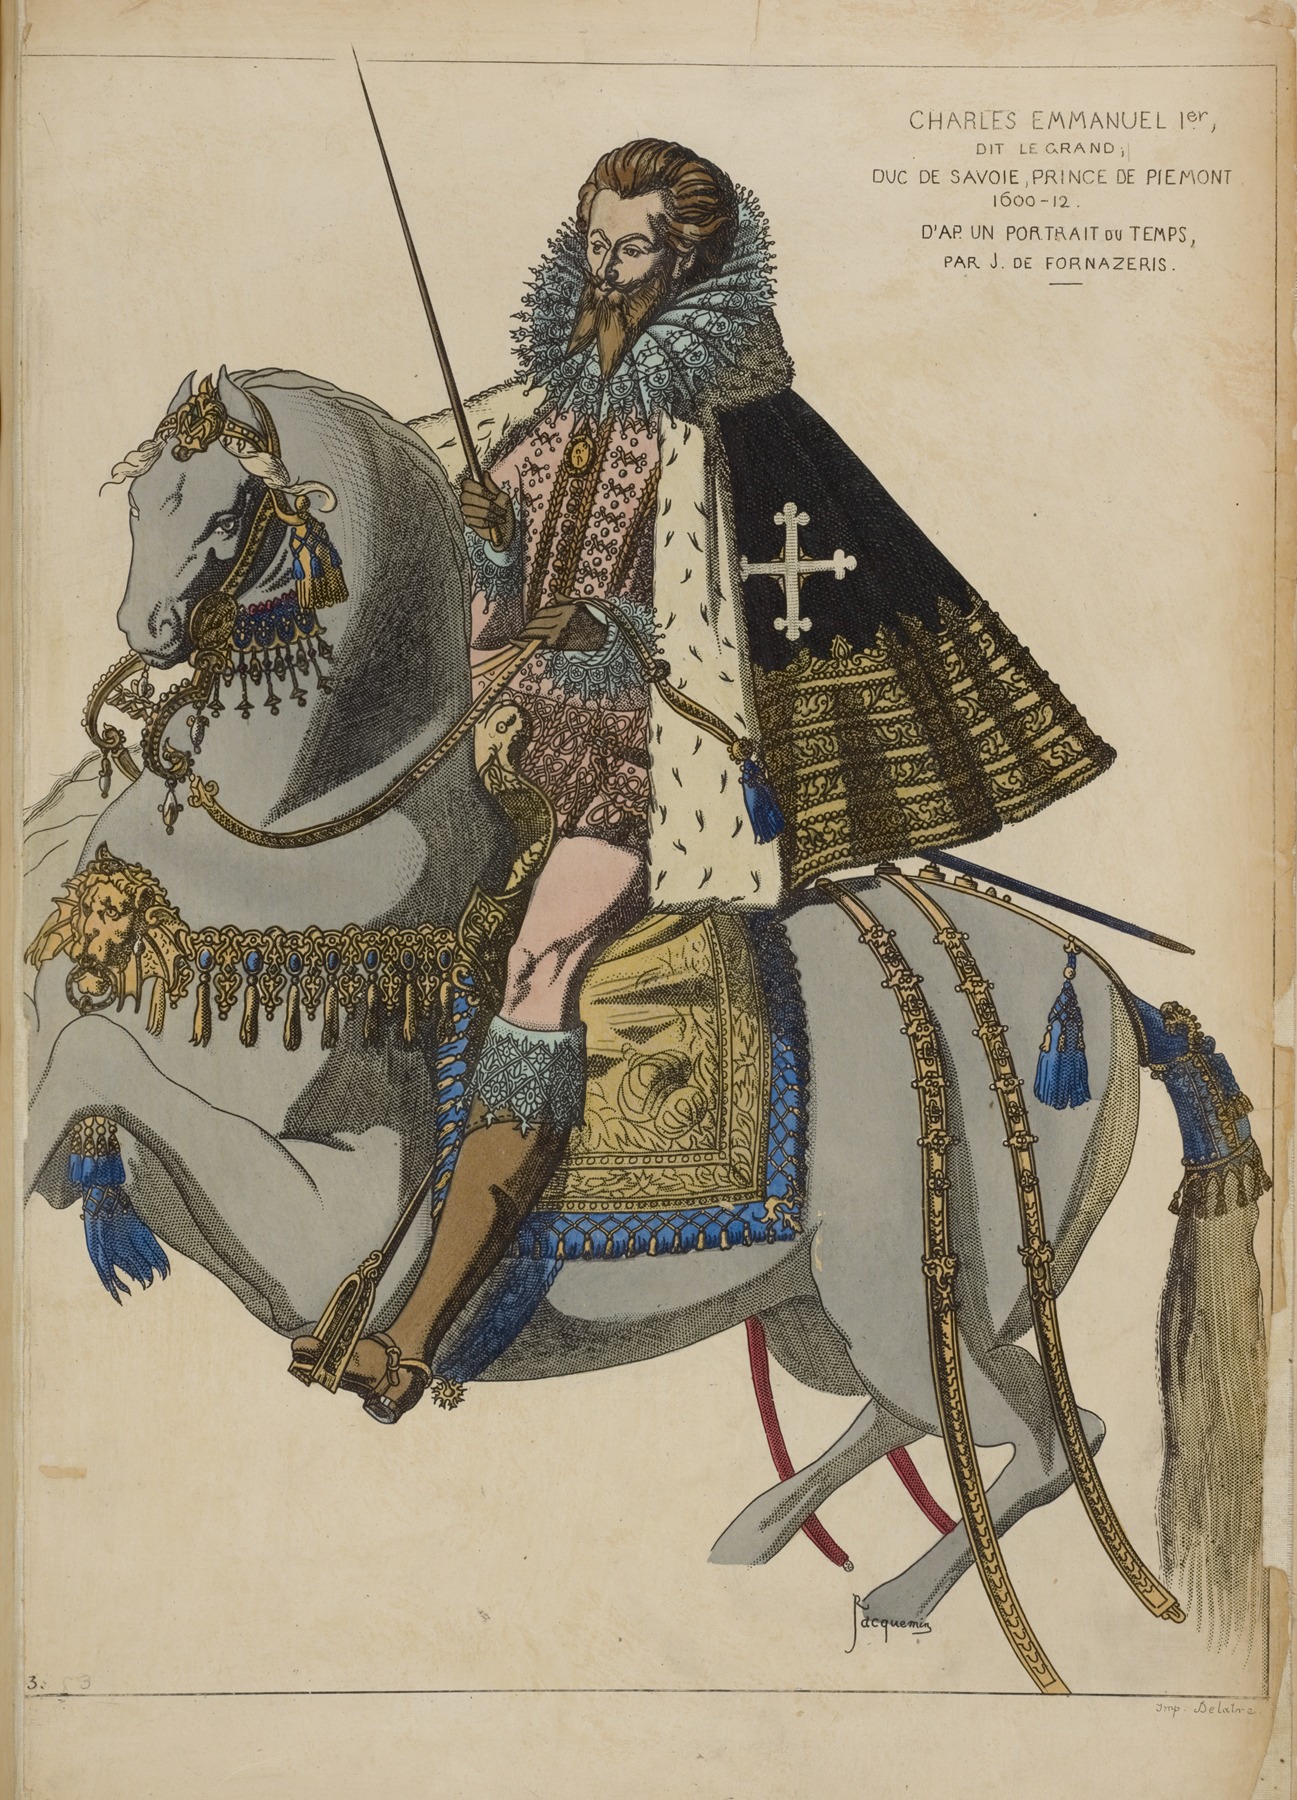 Raphaël Jacquemin - Charles Emmanuel 1er, dit le grand, duc de Savoie, prince de Piemont 1600-12. D’ap[res] un portrait du temps, par J. de Fornazeris.